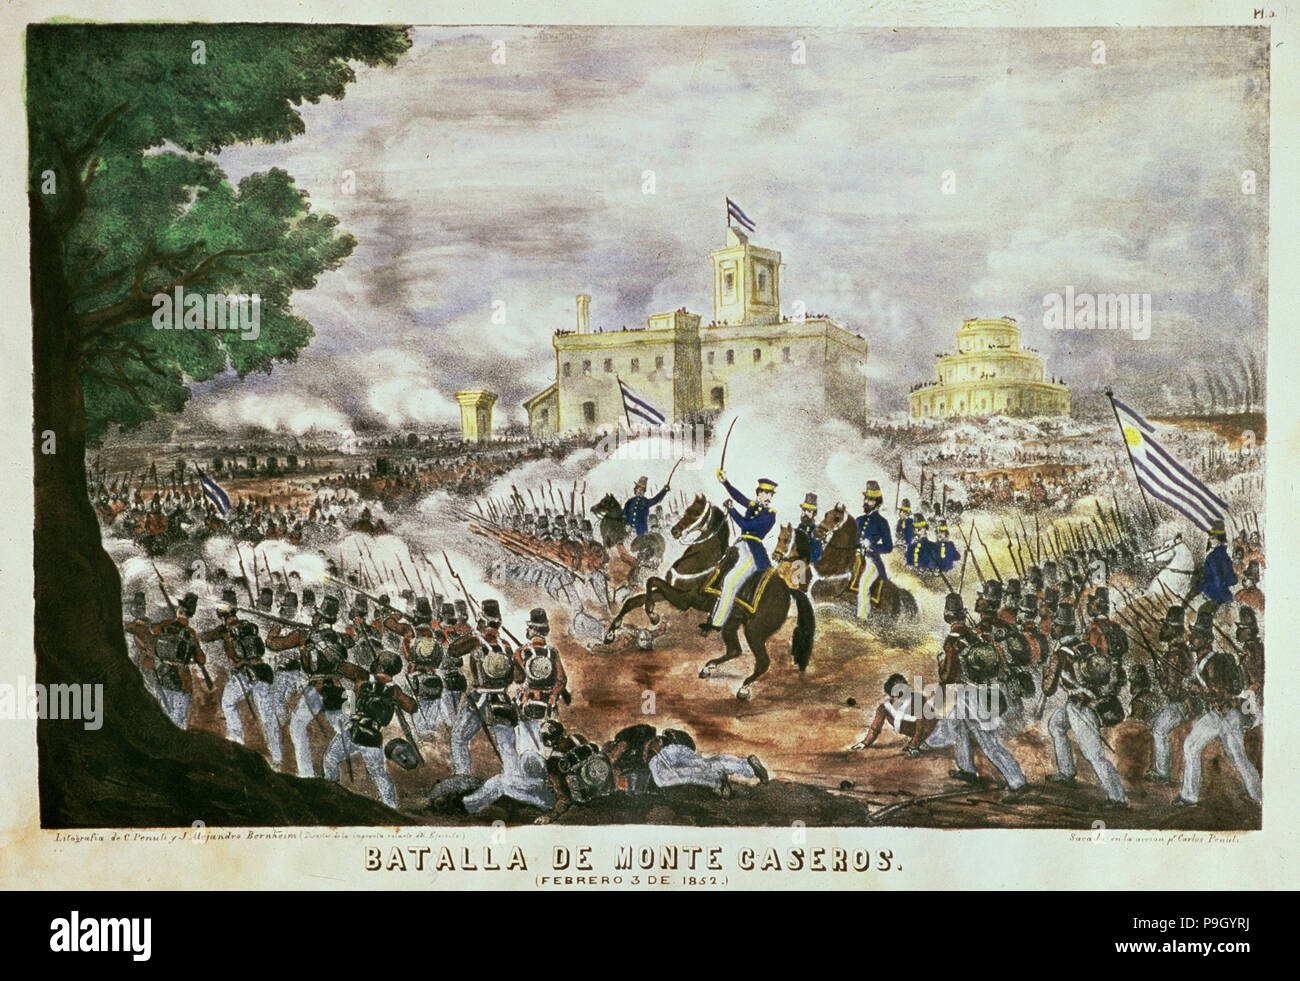 Battaglia di Monte Caseros 1852, litografia. Foto Stock